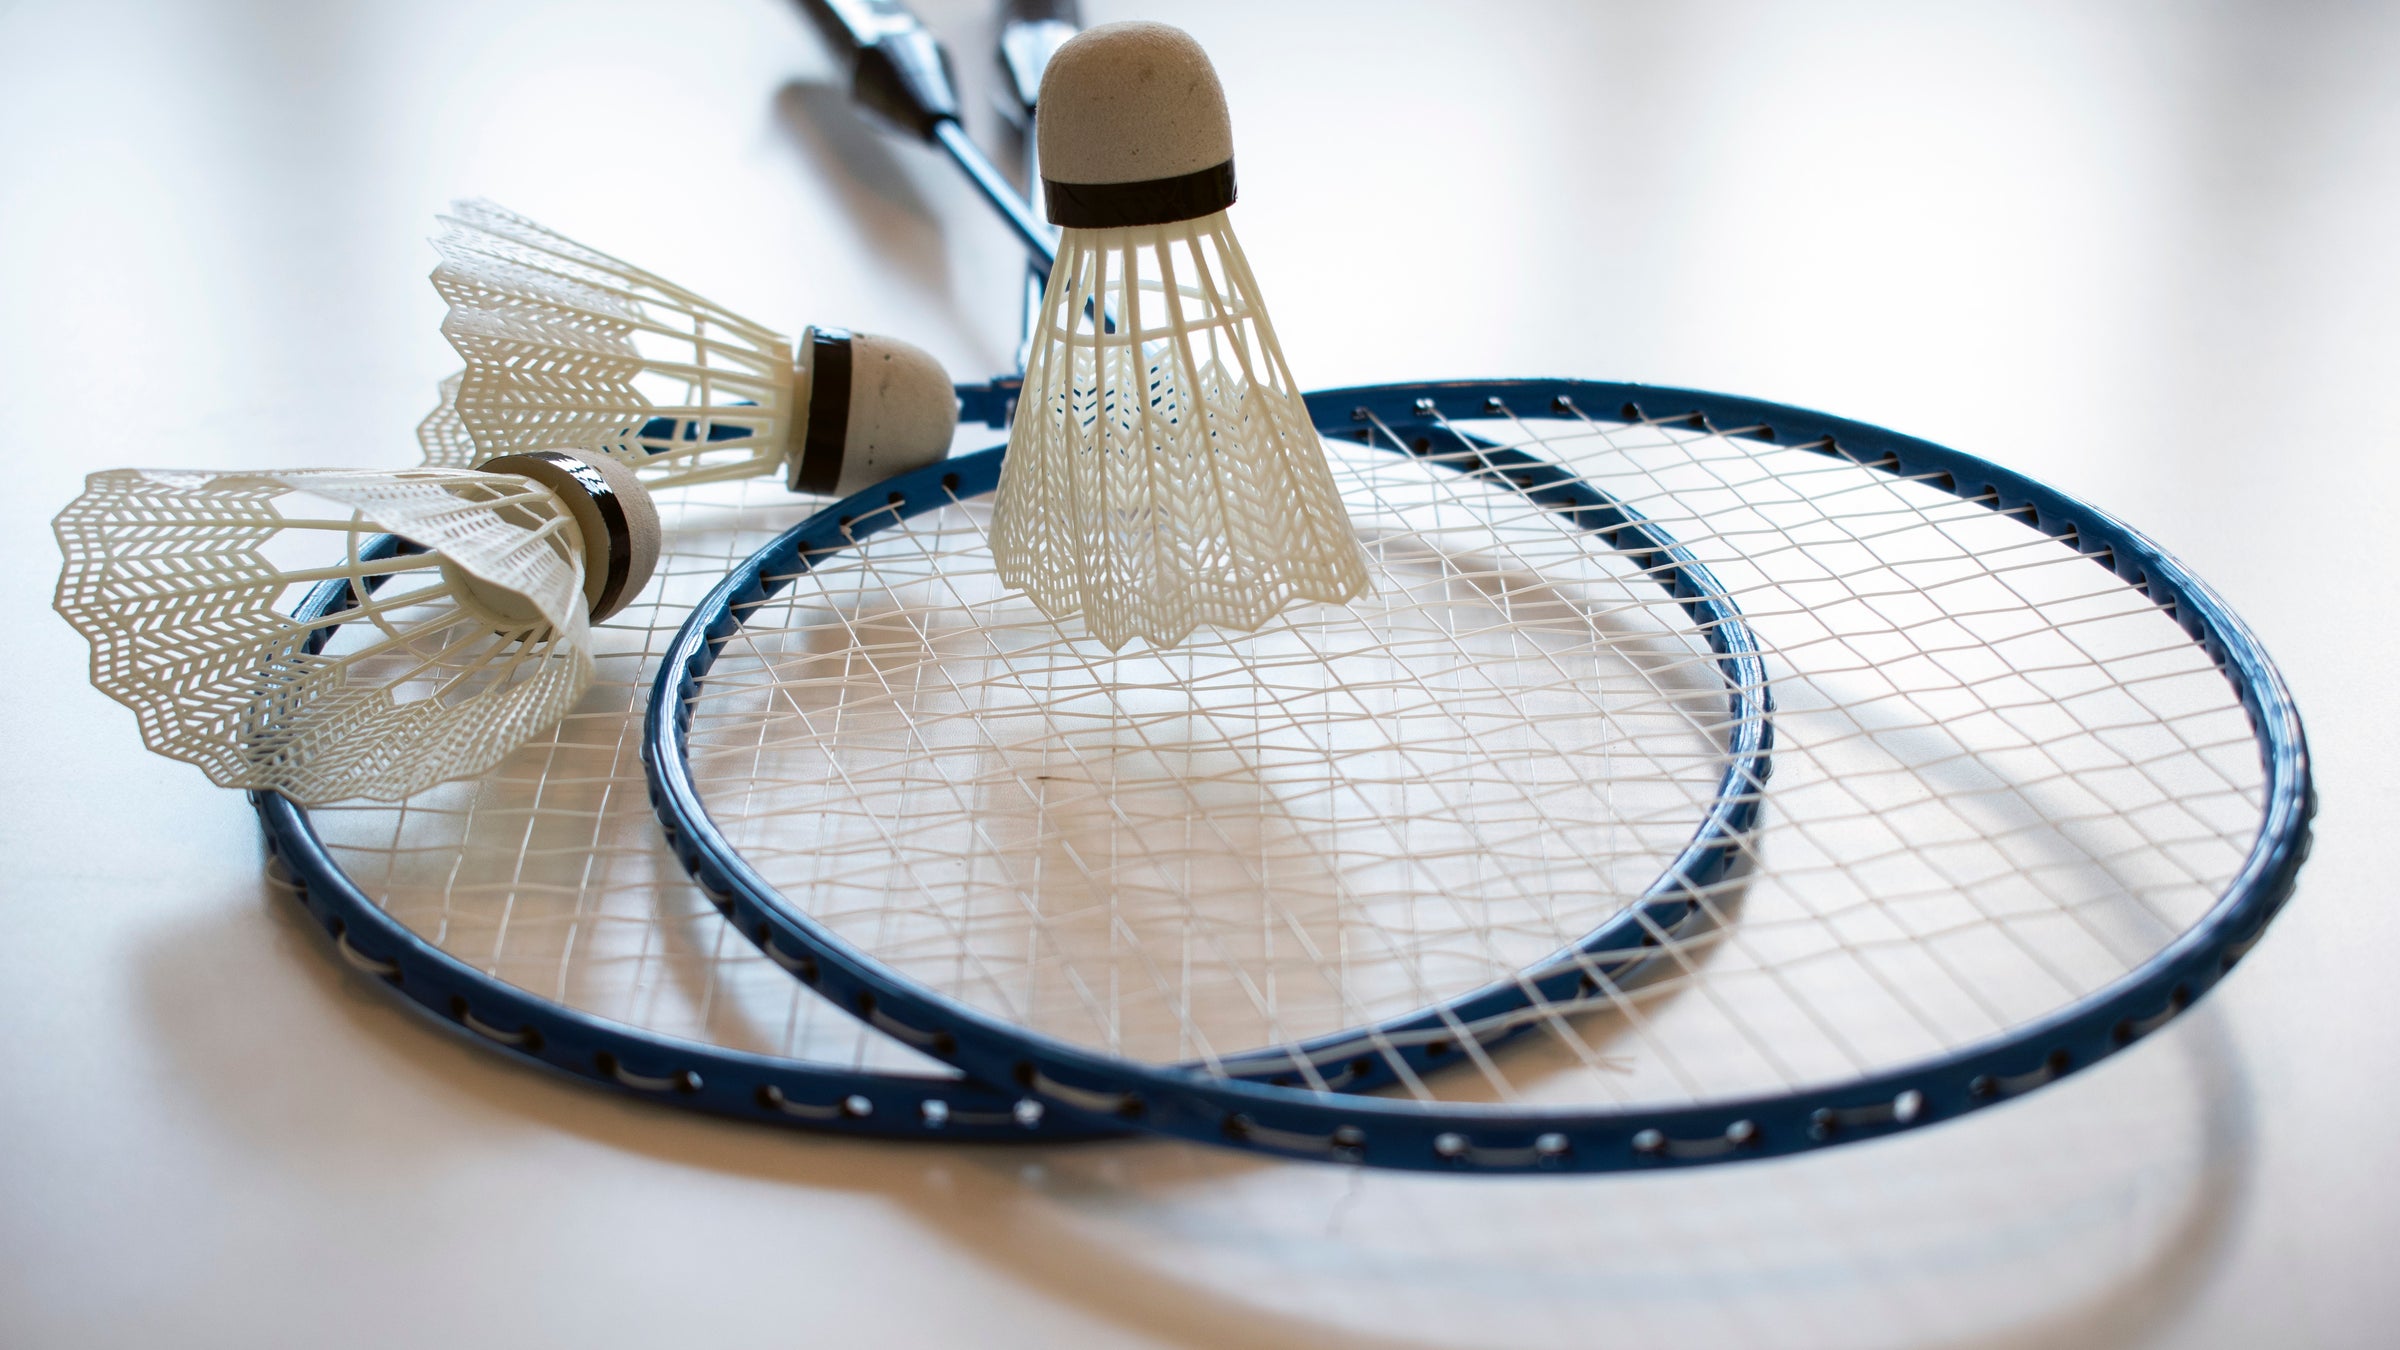 Badminton strings